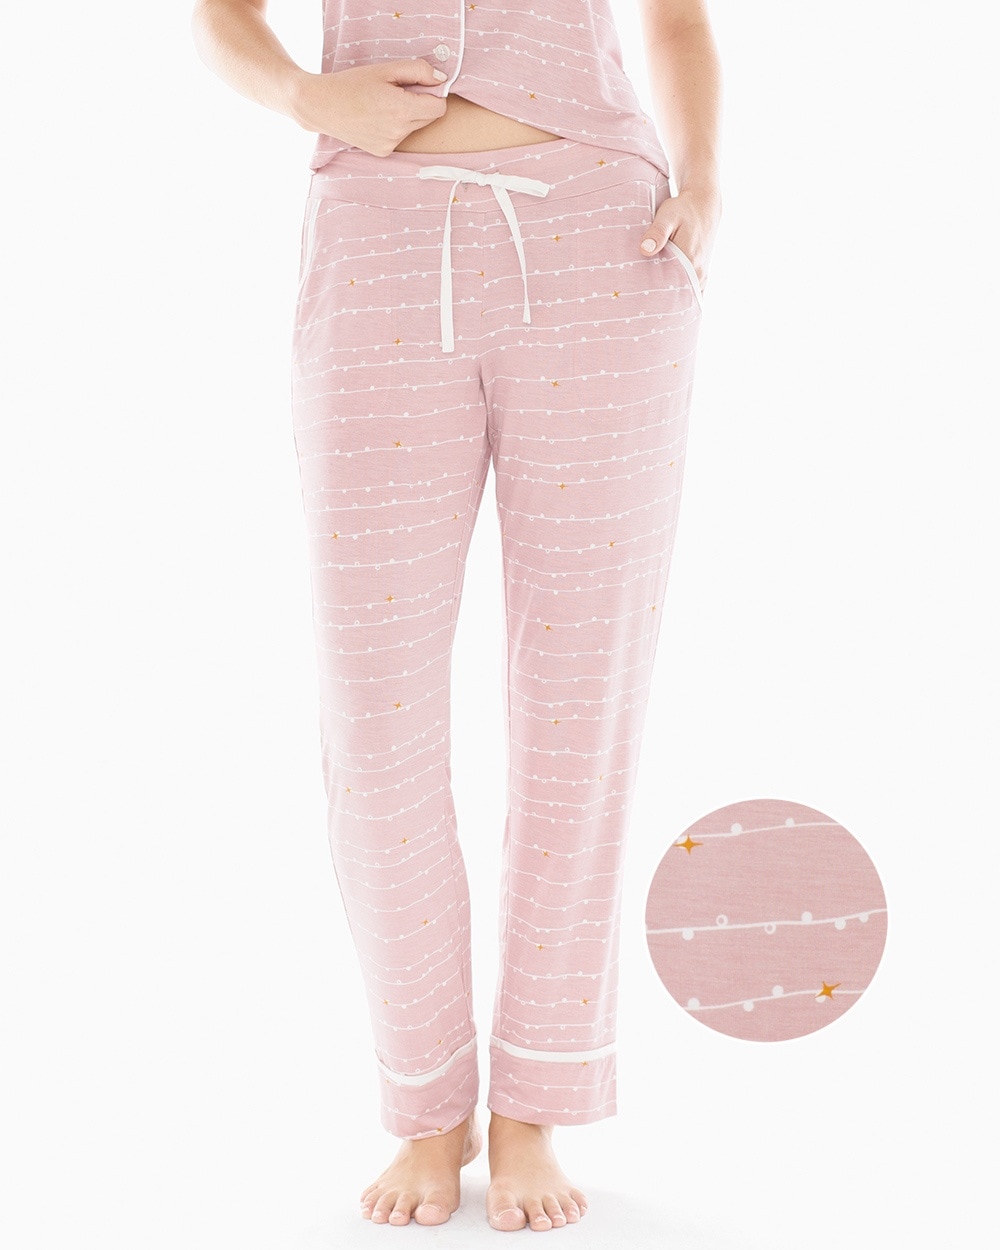 Cool Nights Satin Trim Ankle Pajama Pants Garland Stripe Pink